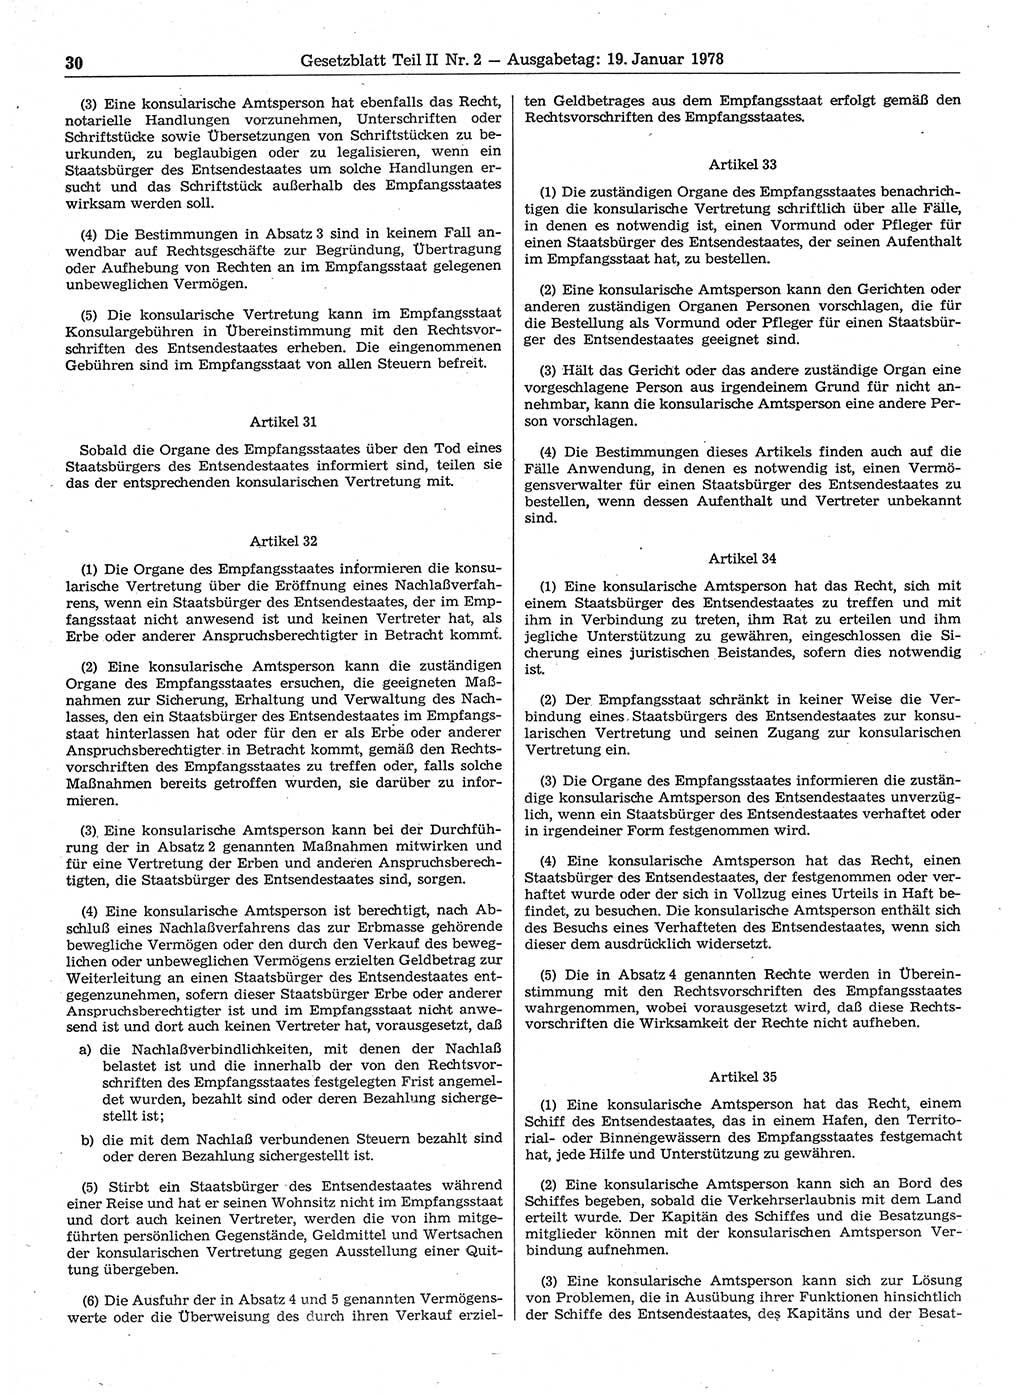 Gesetzblatt (GBl.) der Deutschen Demokratischen Republik (DDR) Teil ⅠⅠ 1978, Seite 30 (GBl. DDR ⅠⅠ 1978, S. 30)